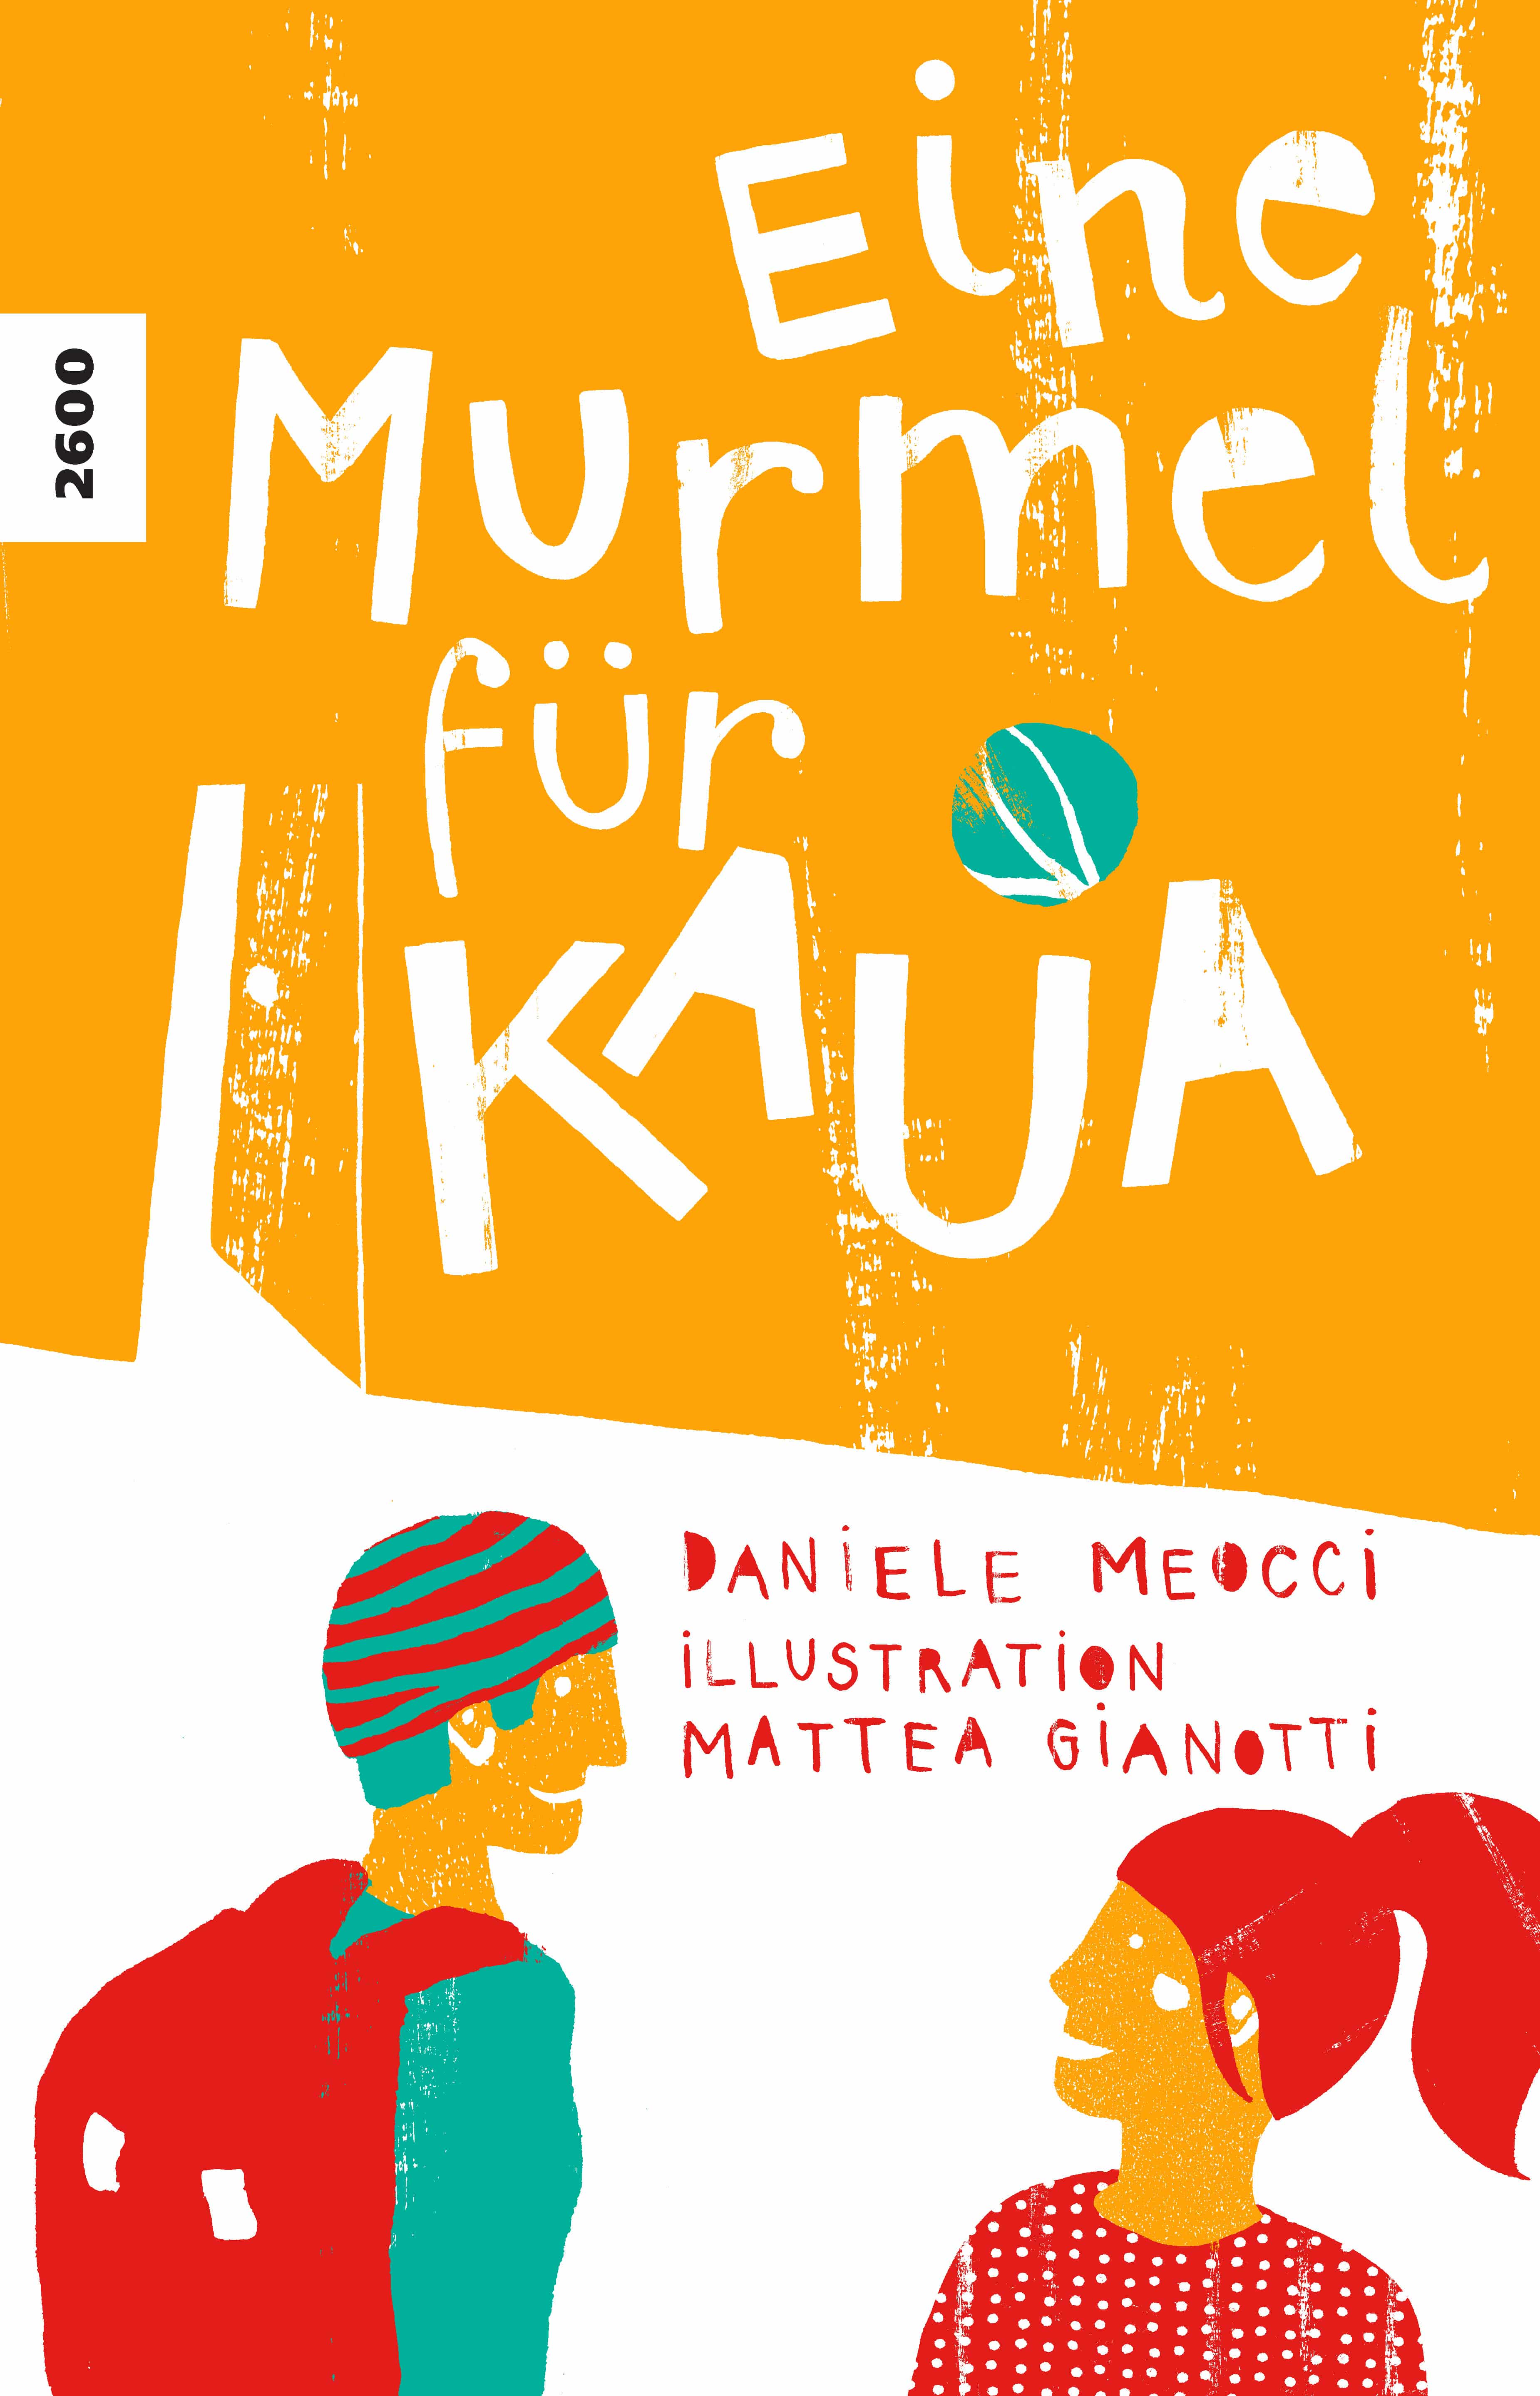 Eine Murmel fuer Kaua, ein Kinderbuch von Daniele Meocci, Illustration von Mattea Gianotti, SJW Verlag, Migration